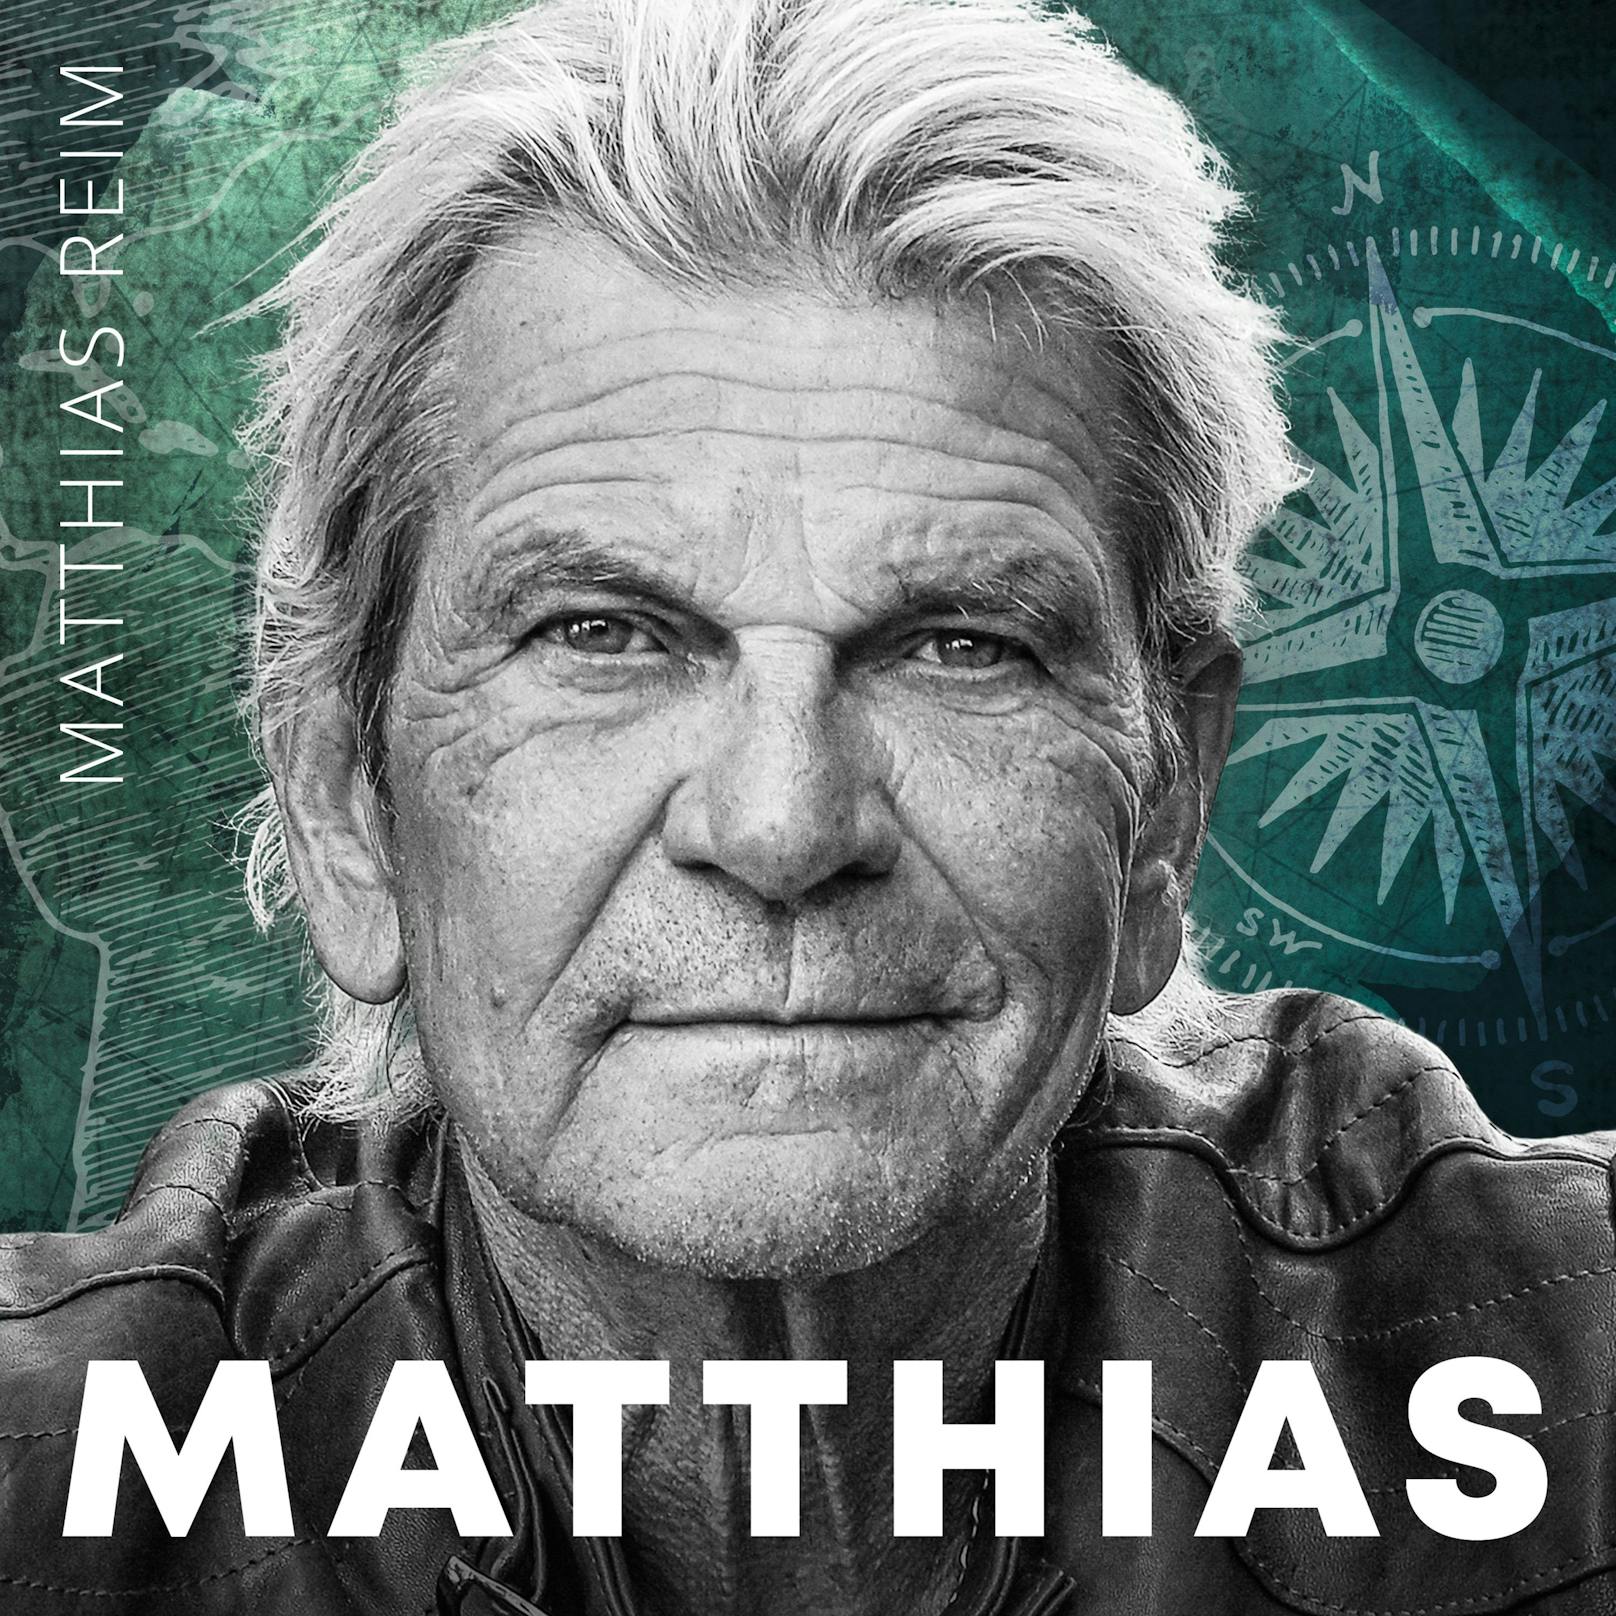 Matthias Reim - Album "Matthias"